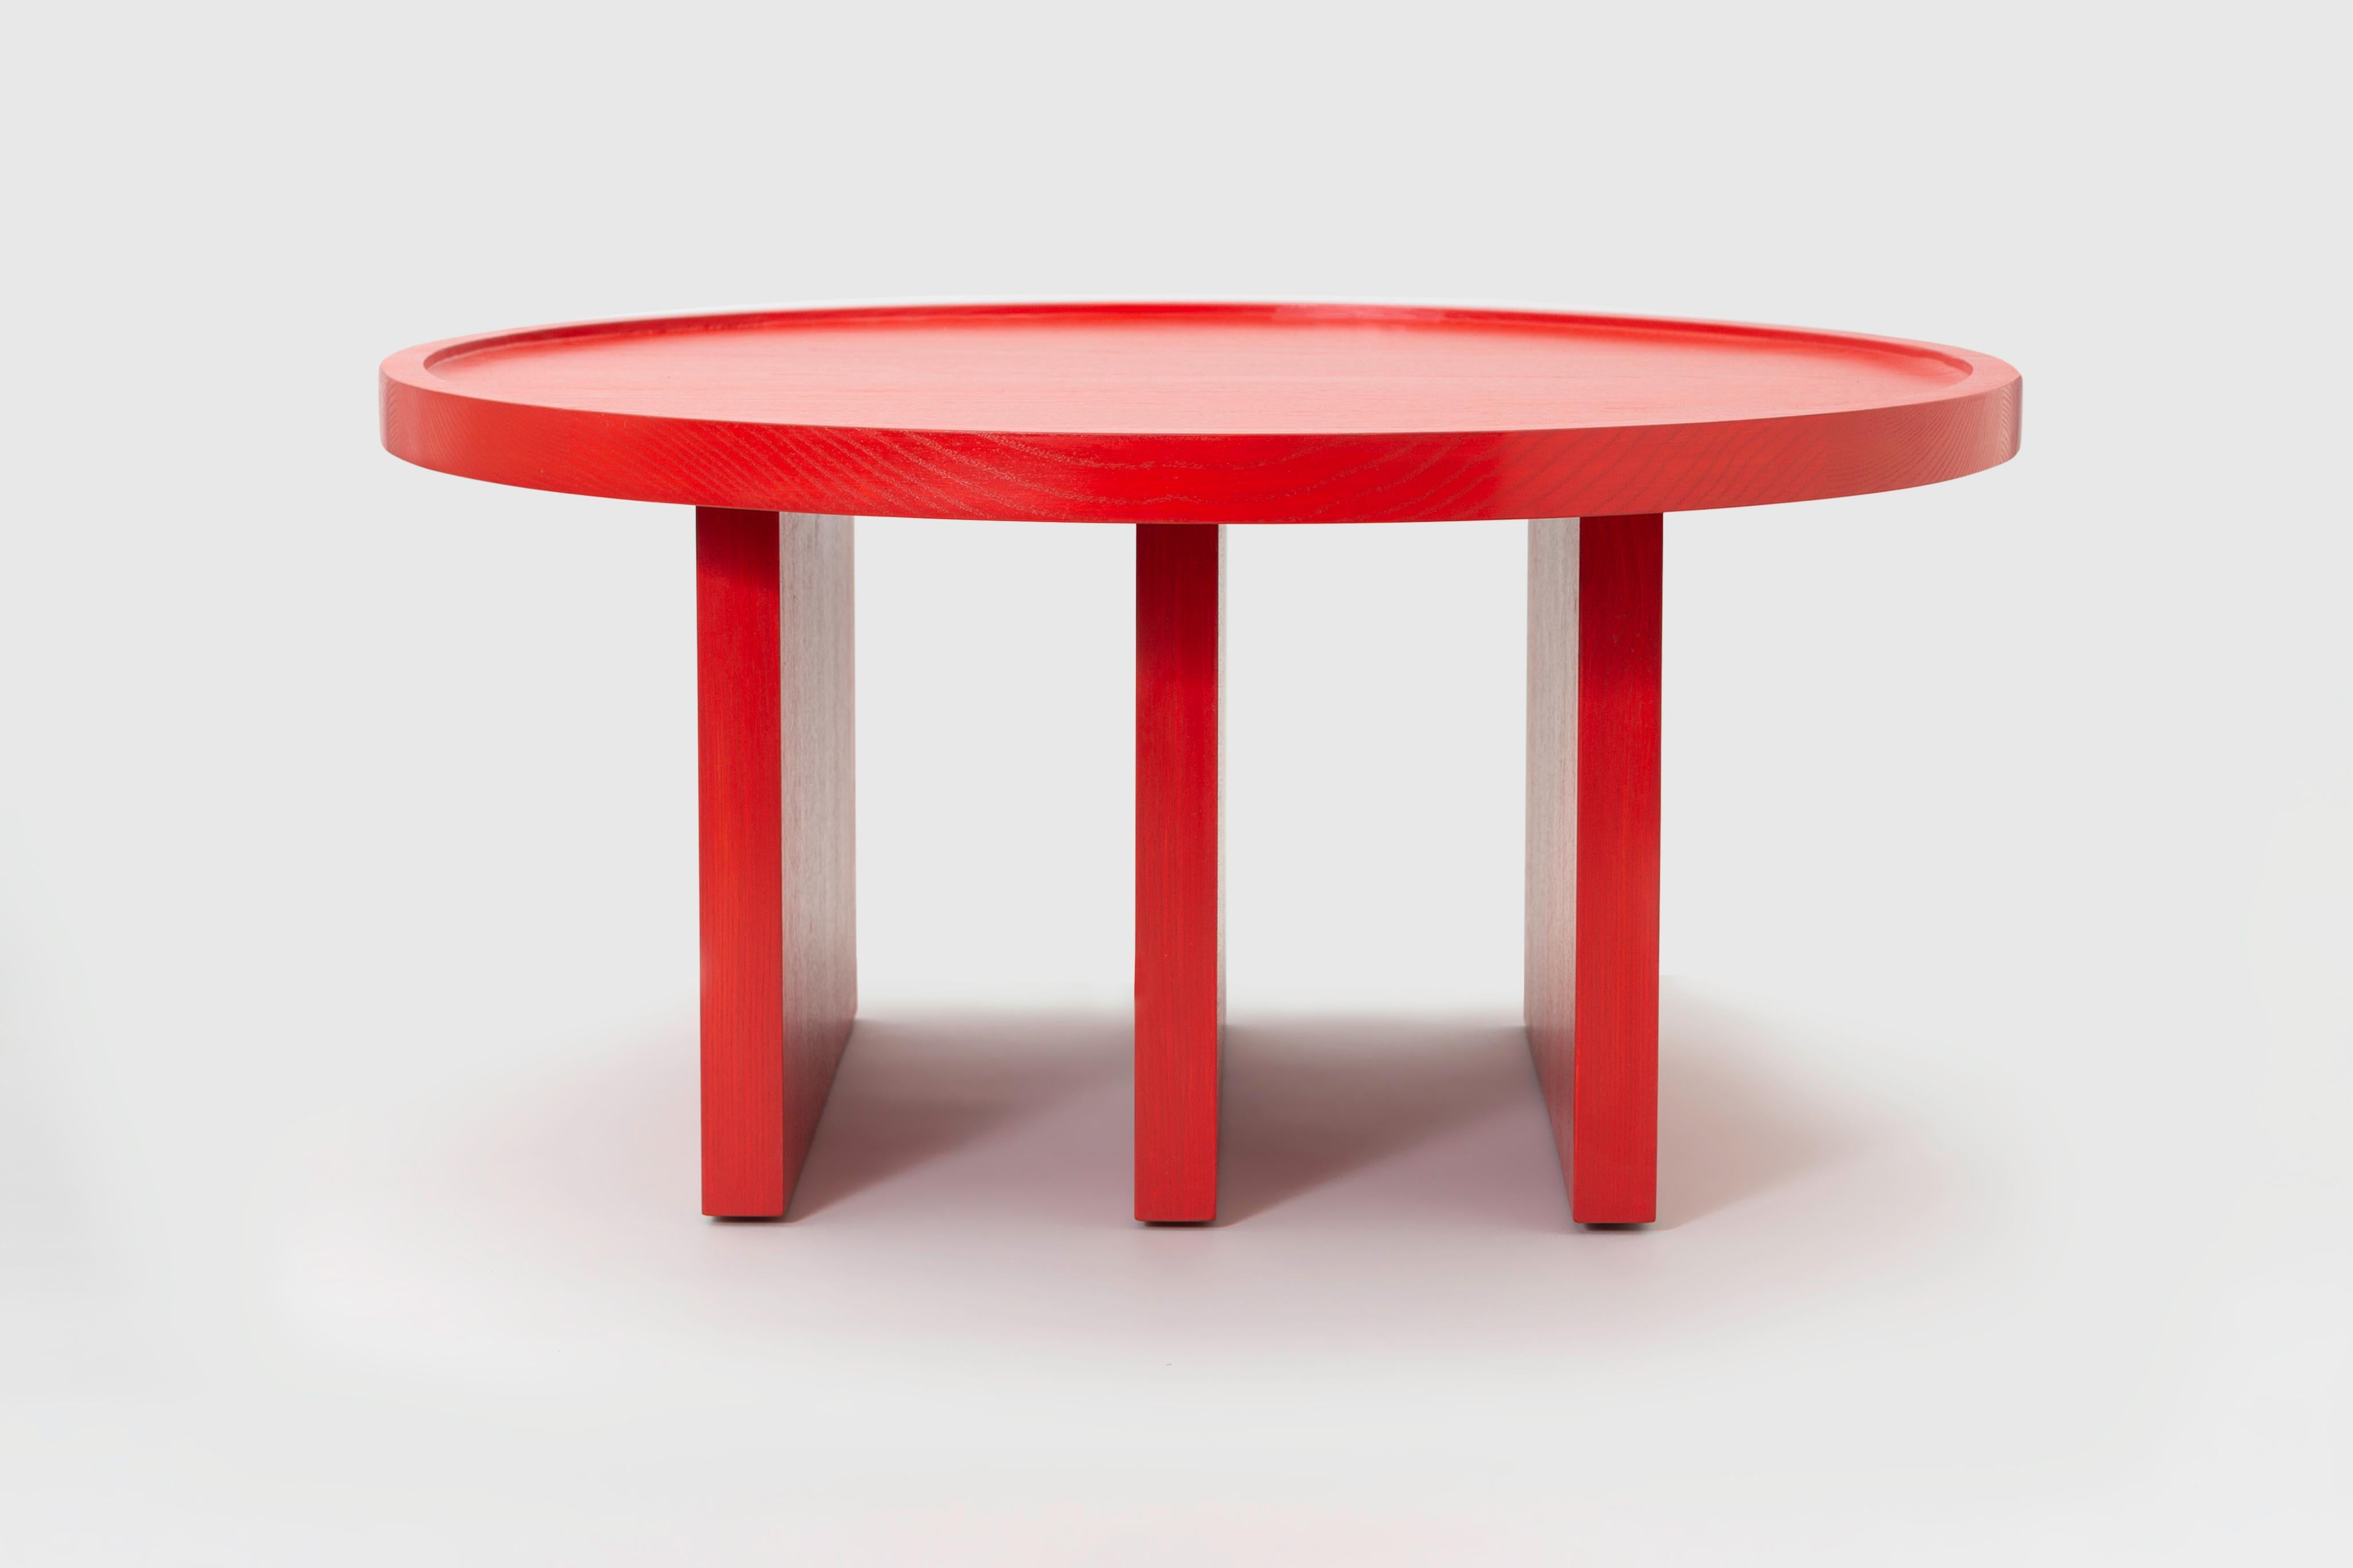 ODD est une table minimaliste créée par le designer berlinois Lucas Faber. Cette pièce non conventionnelle fait référence à des structures architecturales audacieuses et à des motifs graphiques dans la même mesure. Les géométries simples qui forment